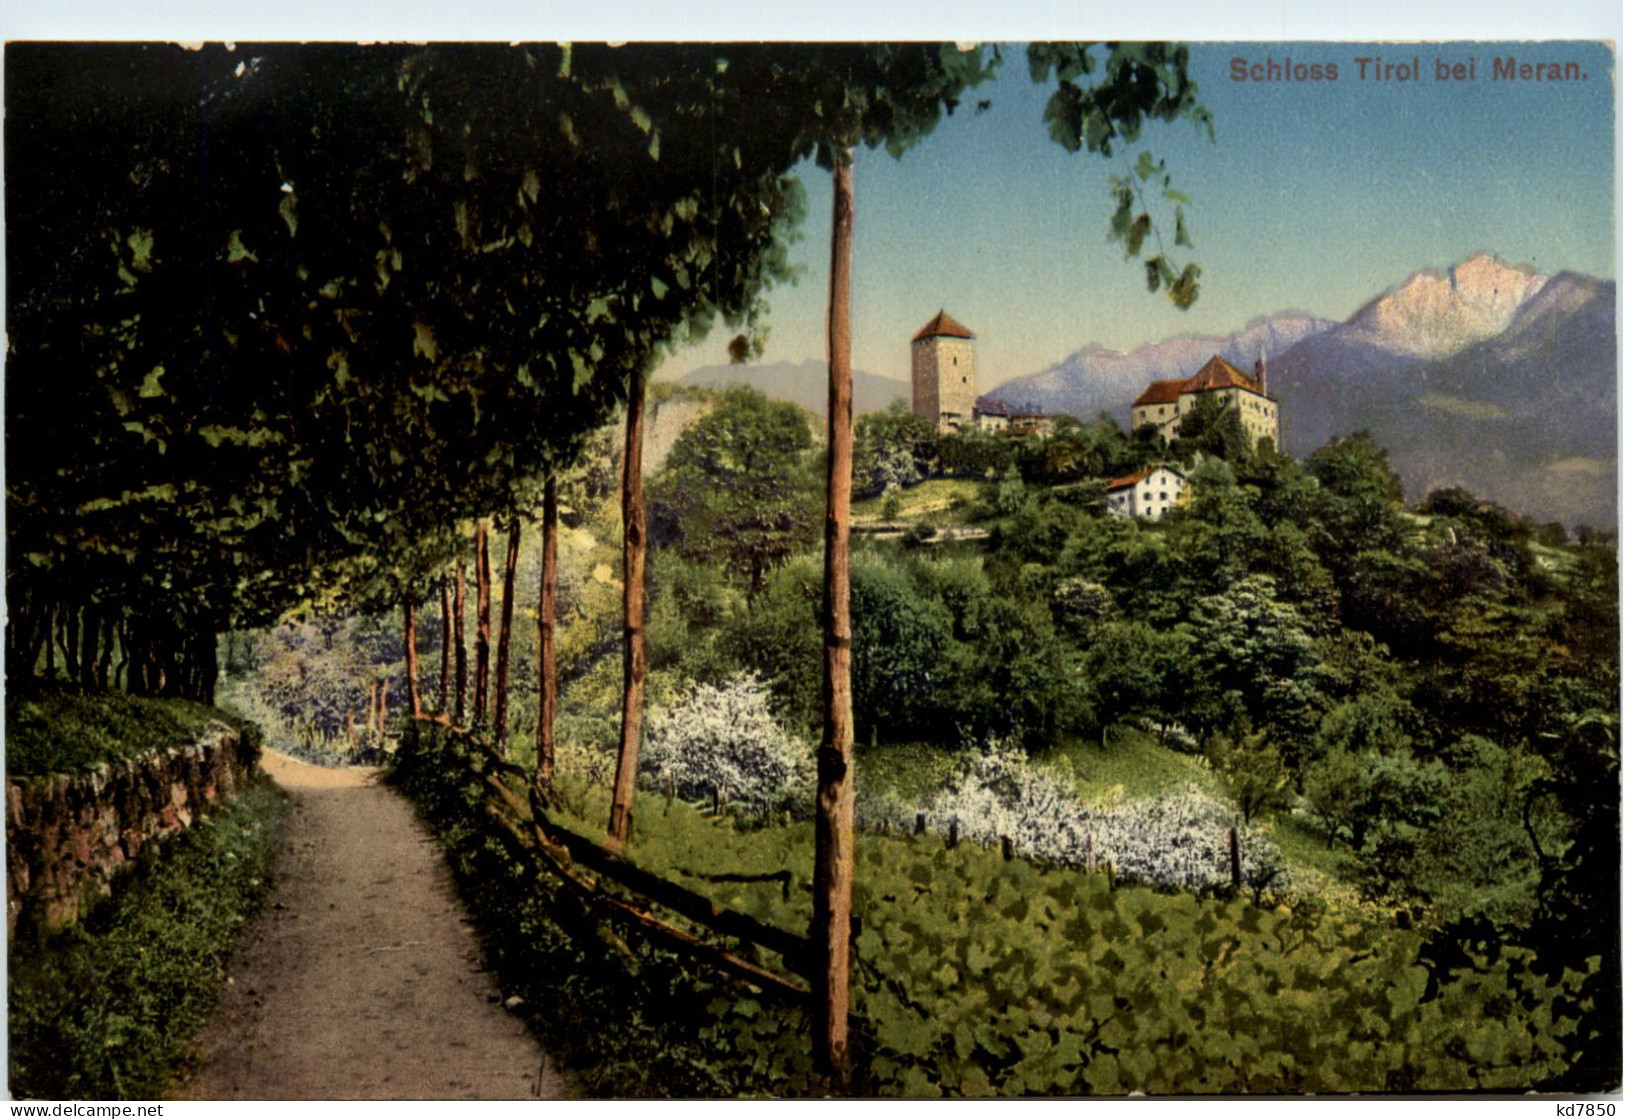 Schloss Tirol Bei Meran - Merano